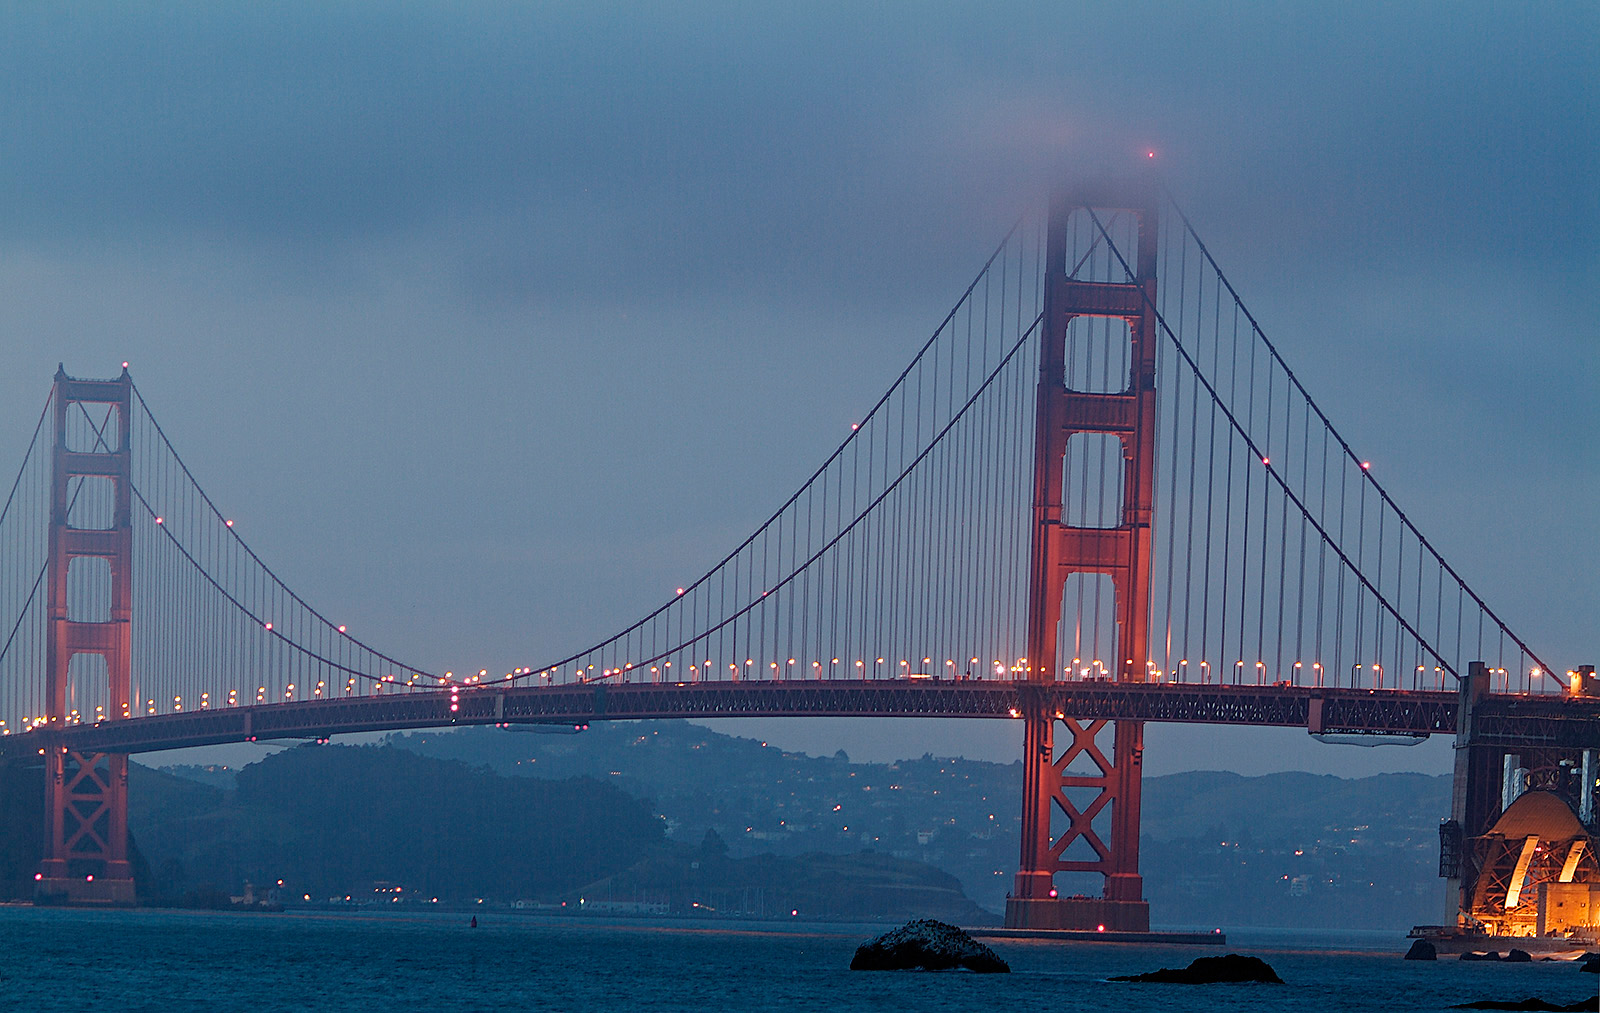 Golden Gate Bridge from Baker beach 02